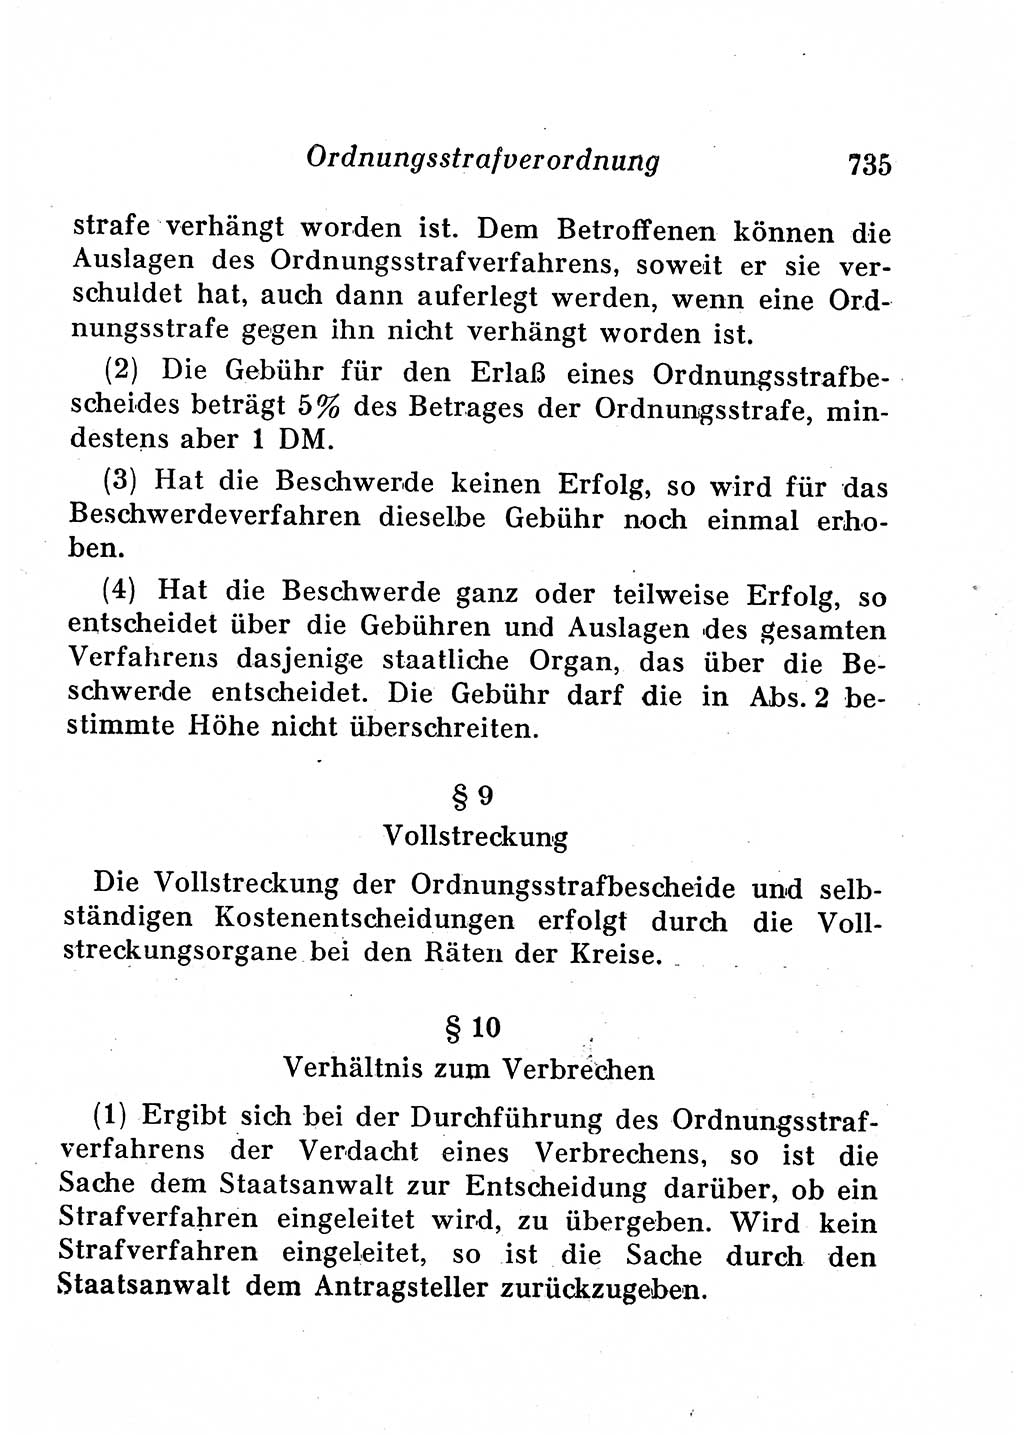 Staats- und verwaltungsrechtliche Gesetze der Deutschen Demokratischen Republik (DDR) 1958, Seite 735 (StVerwR Ges. DDR 1958, S. 735)